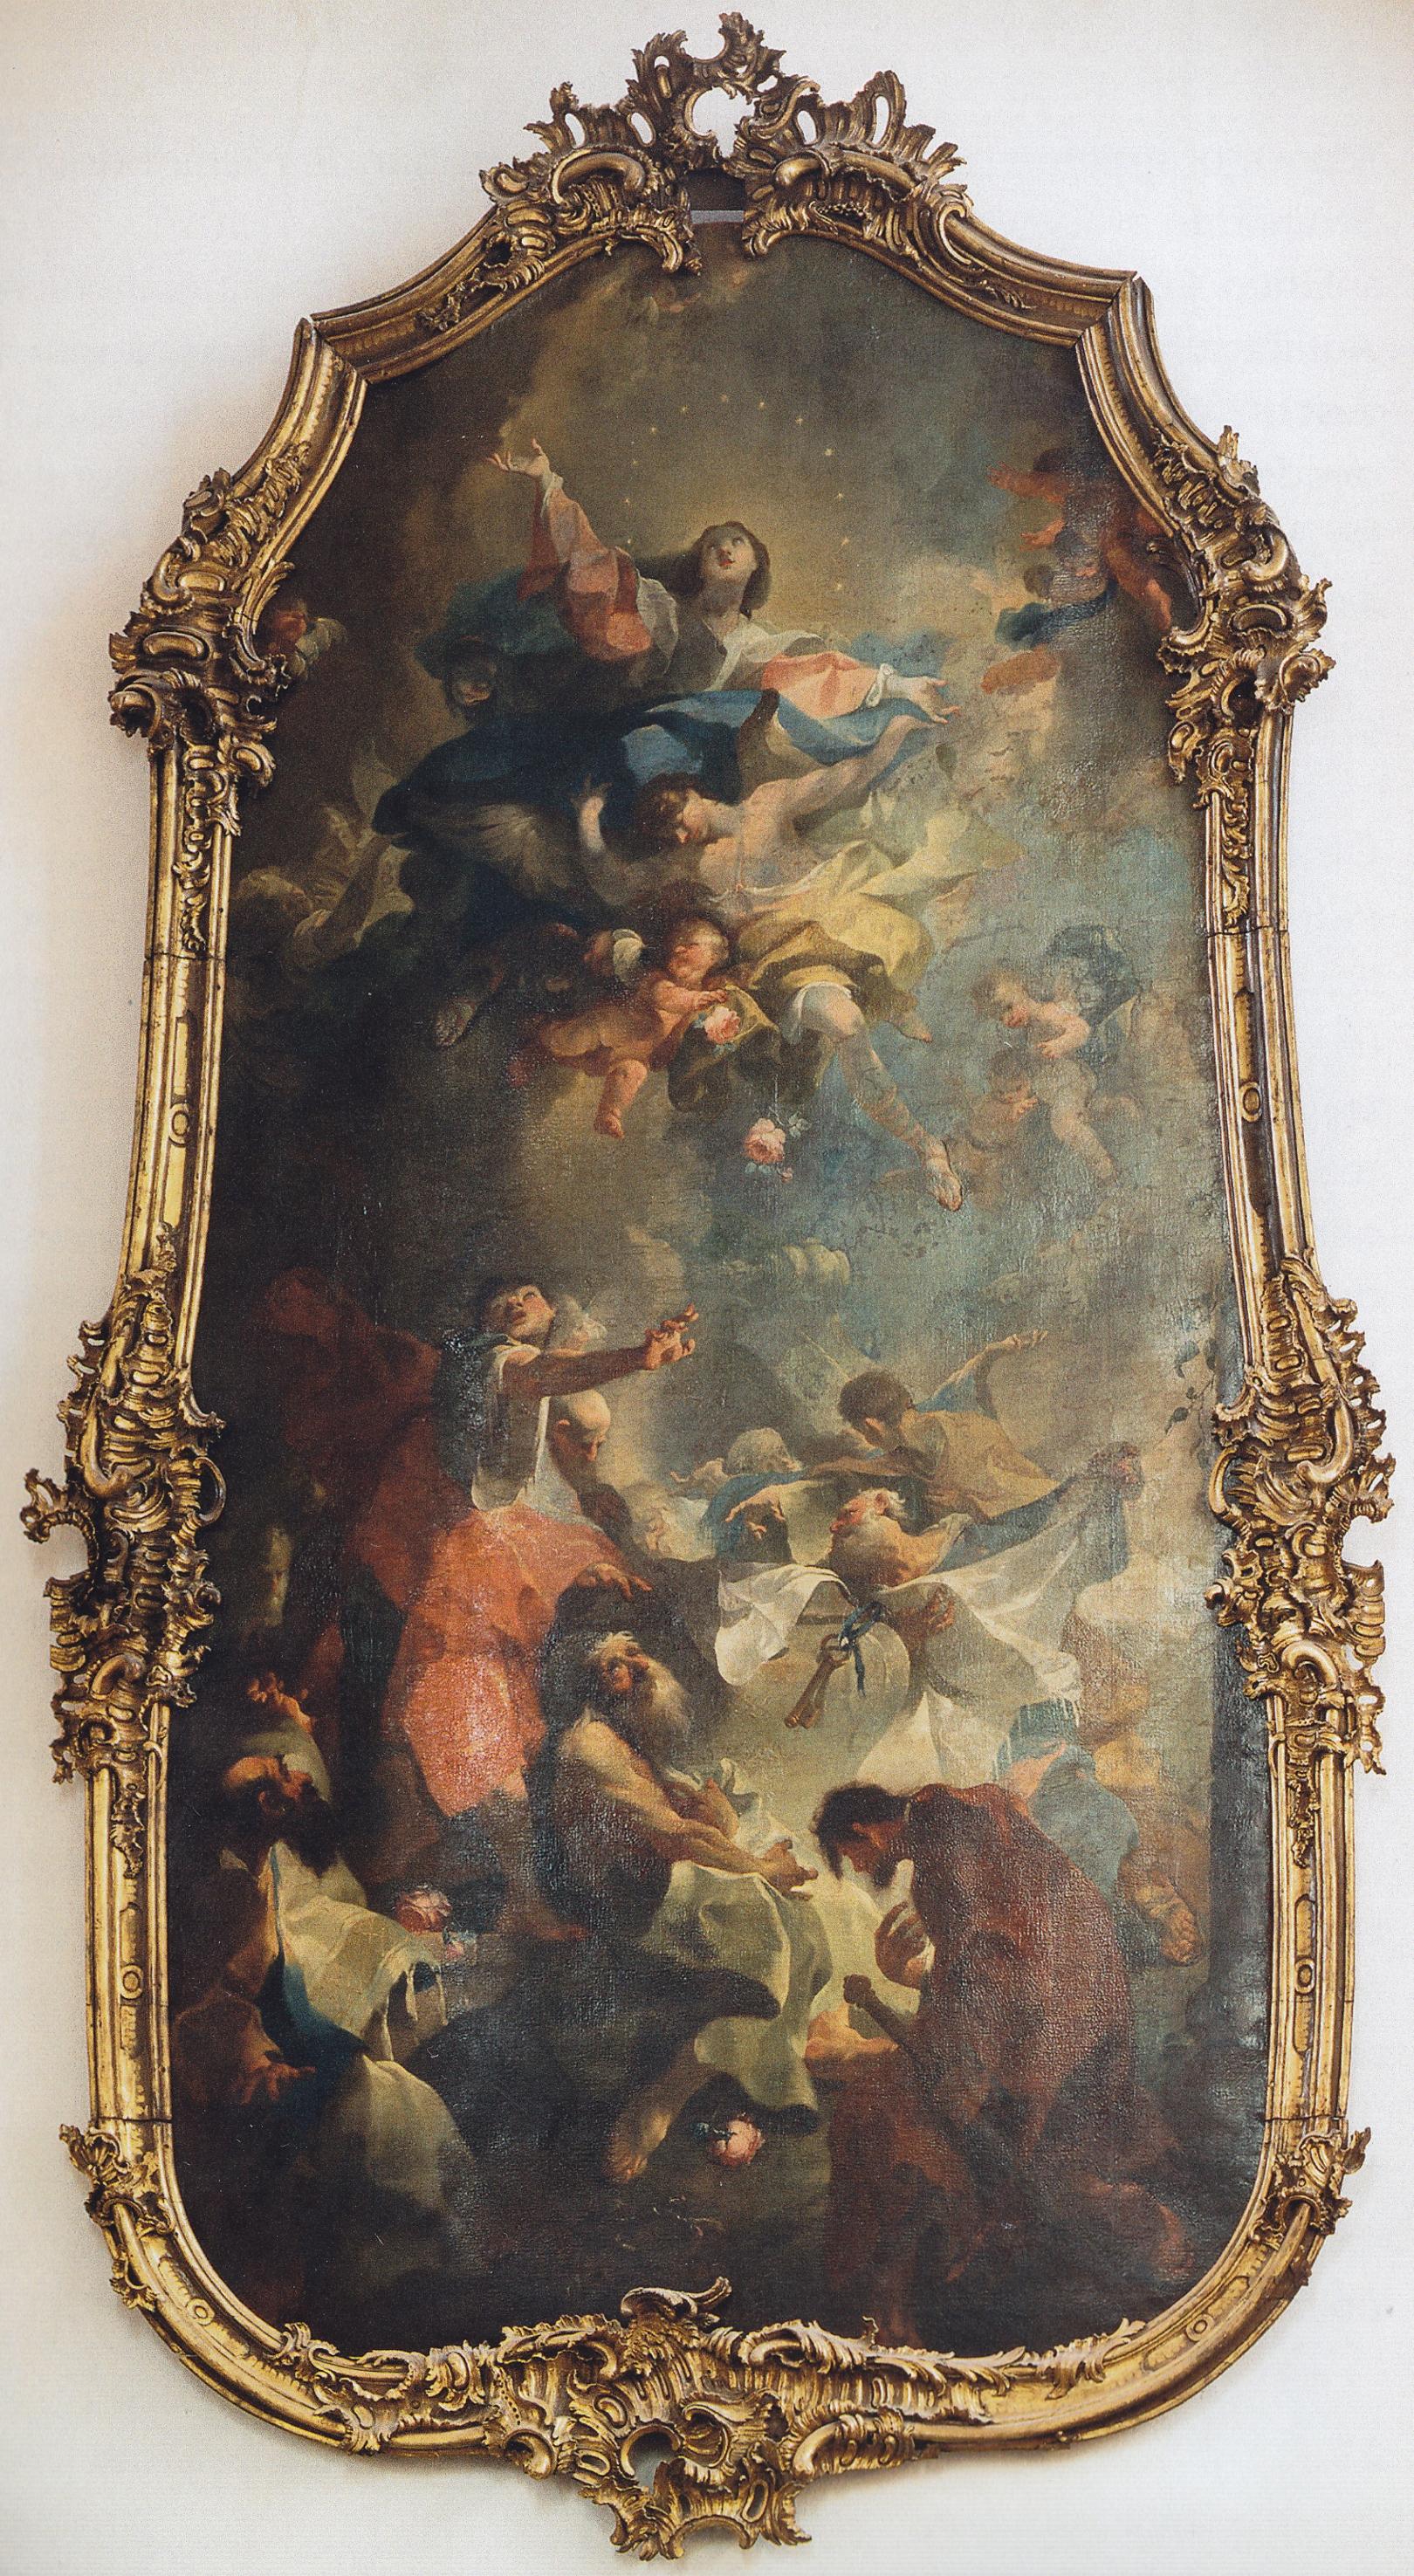 „Mariä Himmelfahrt“ von Franz Anton Maulbertsch in der Kirche St. Quintin, Mainz (1758) (c) Christian Albert